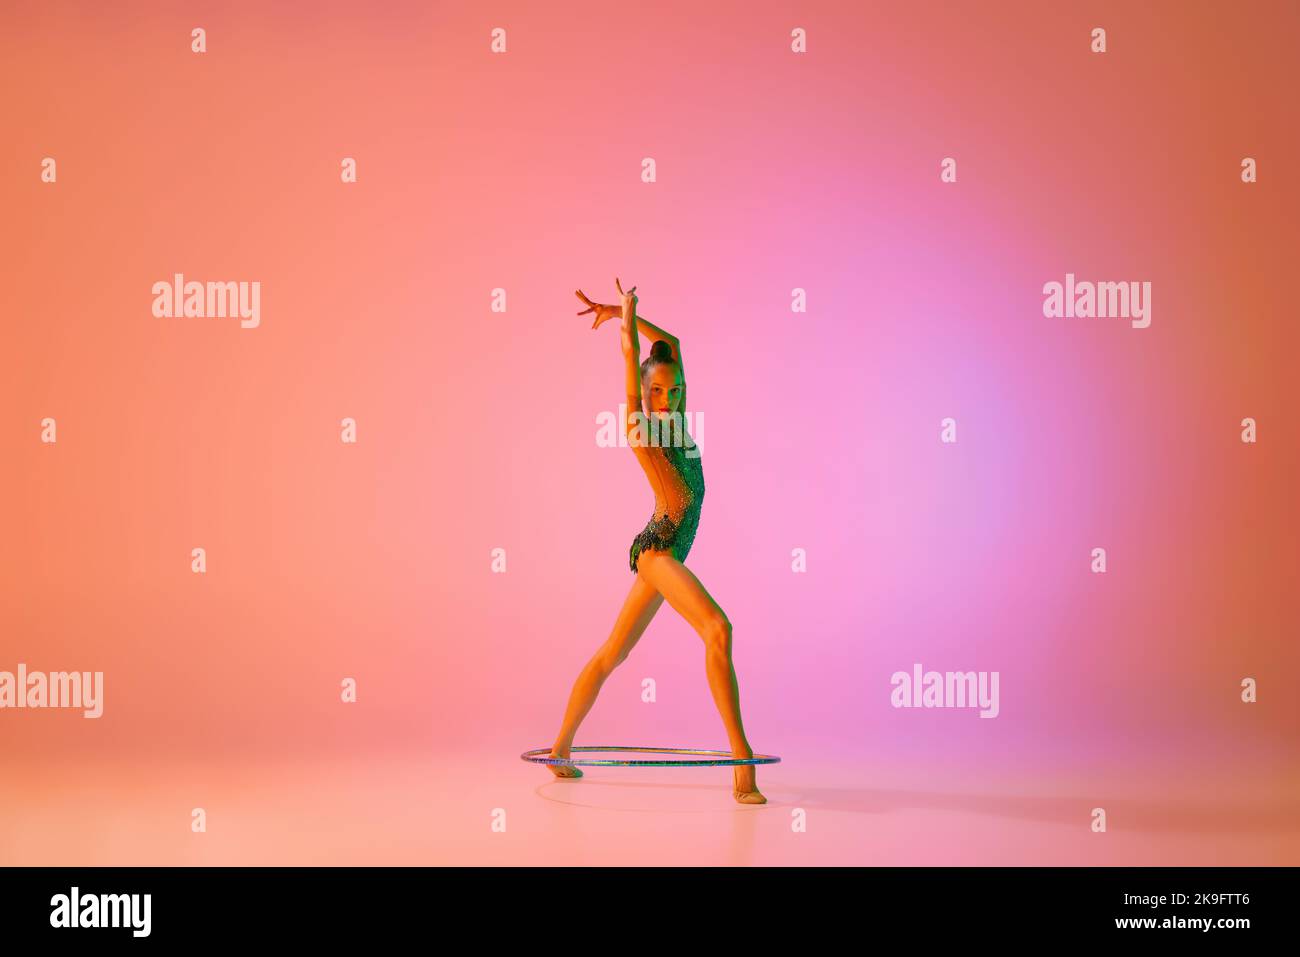 Anmut. Junge flexible teen Mädchen rhythmische Turnerin in Bewegung, Aktion isoliert über rosa Hintergrund in Neonlicht. Sport, Schönheit, Wettbewerb Stockfoto